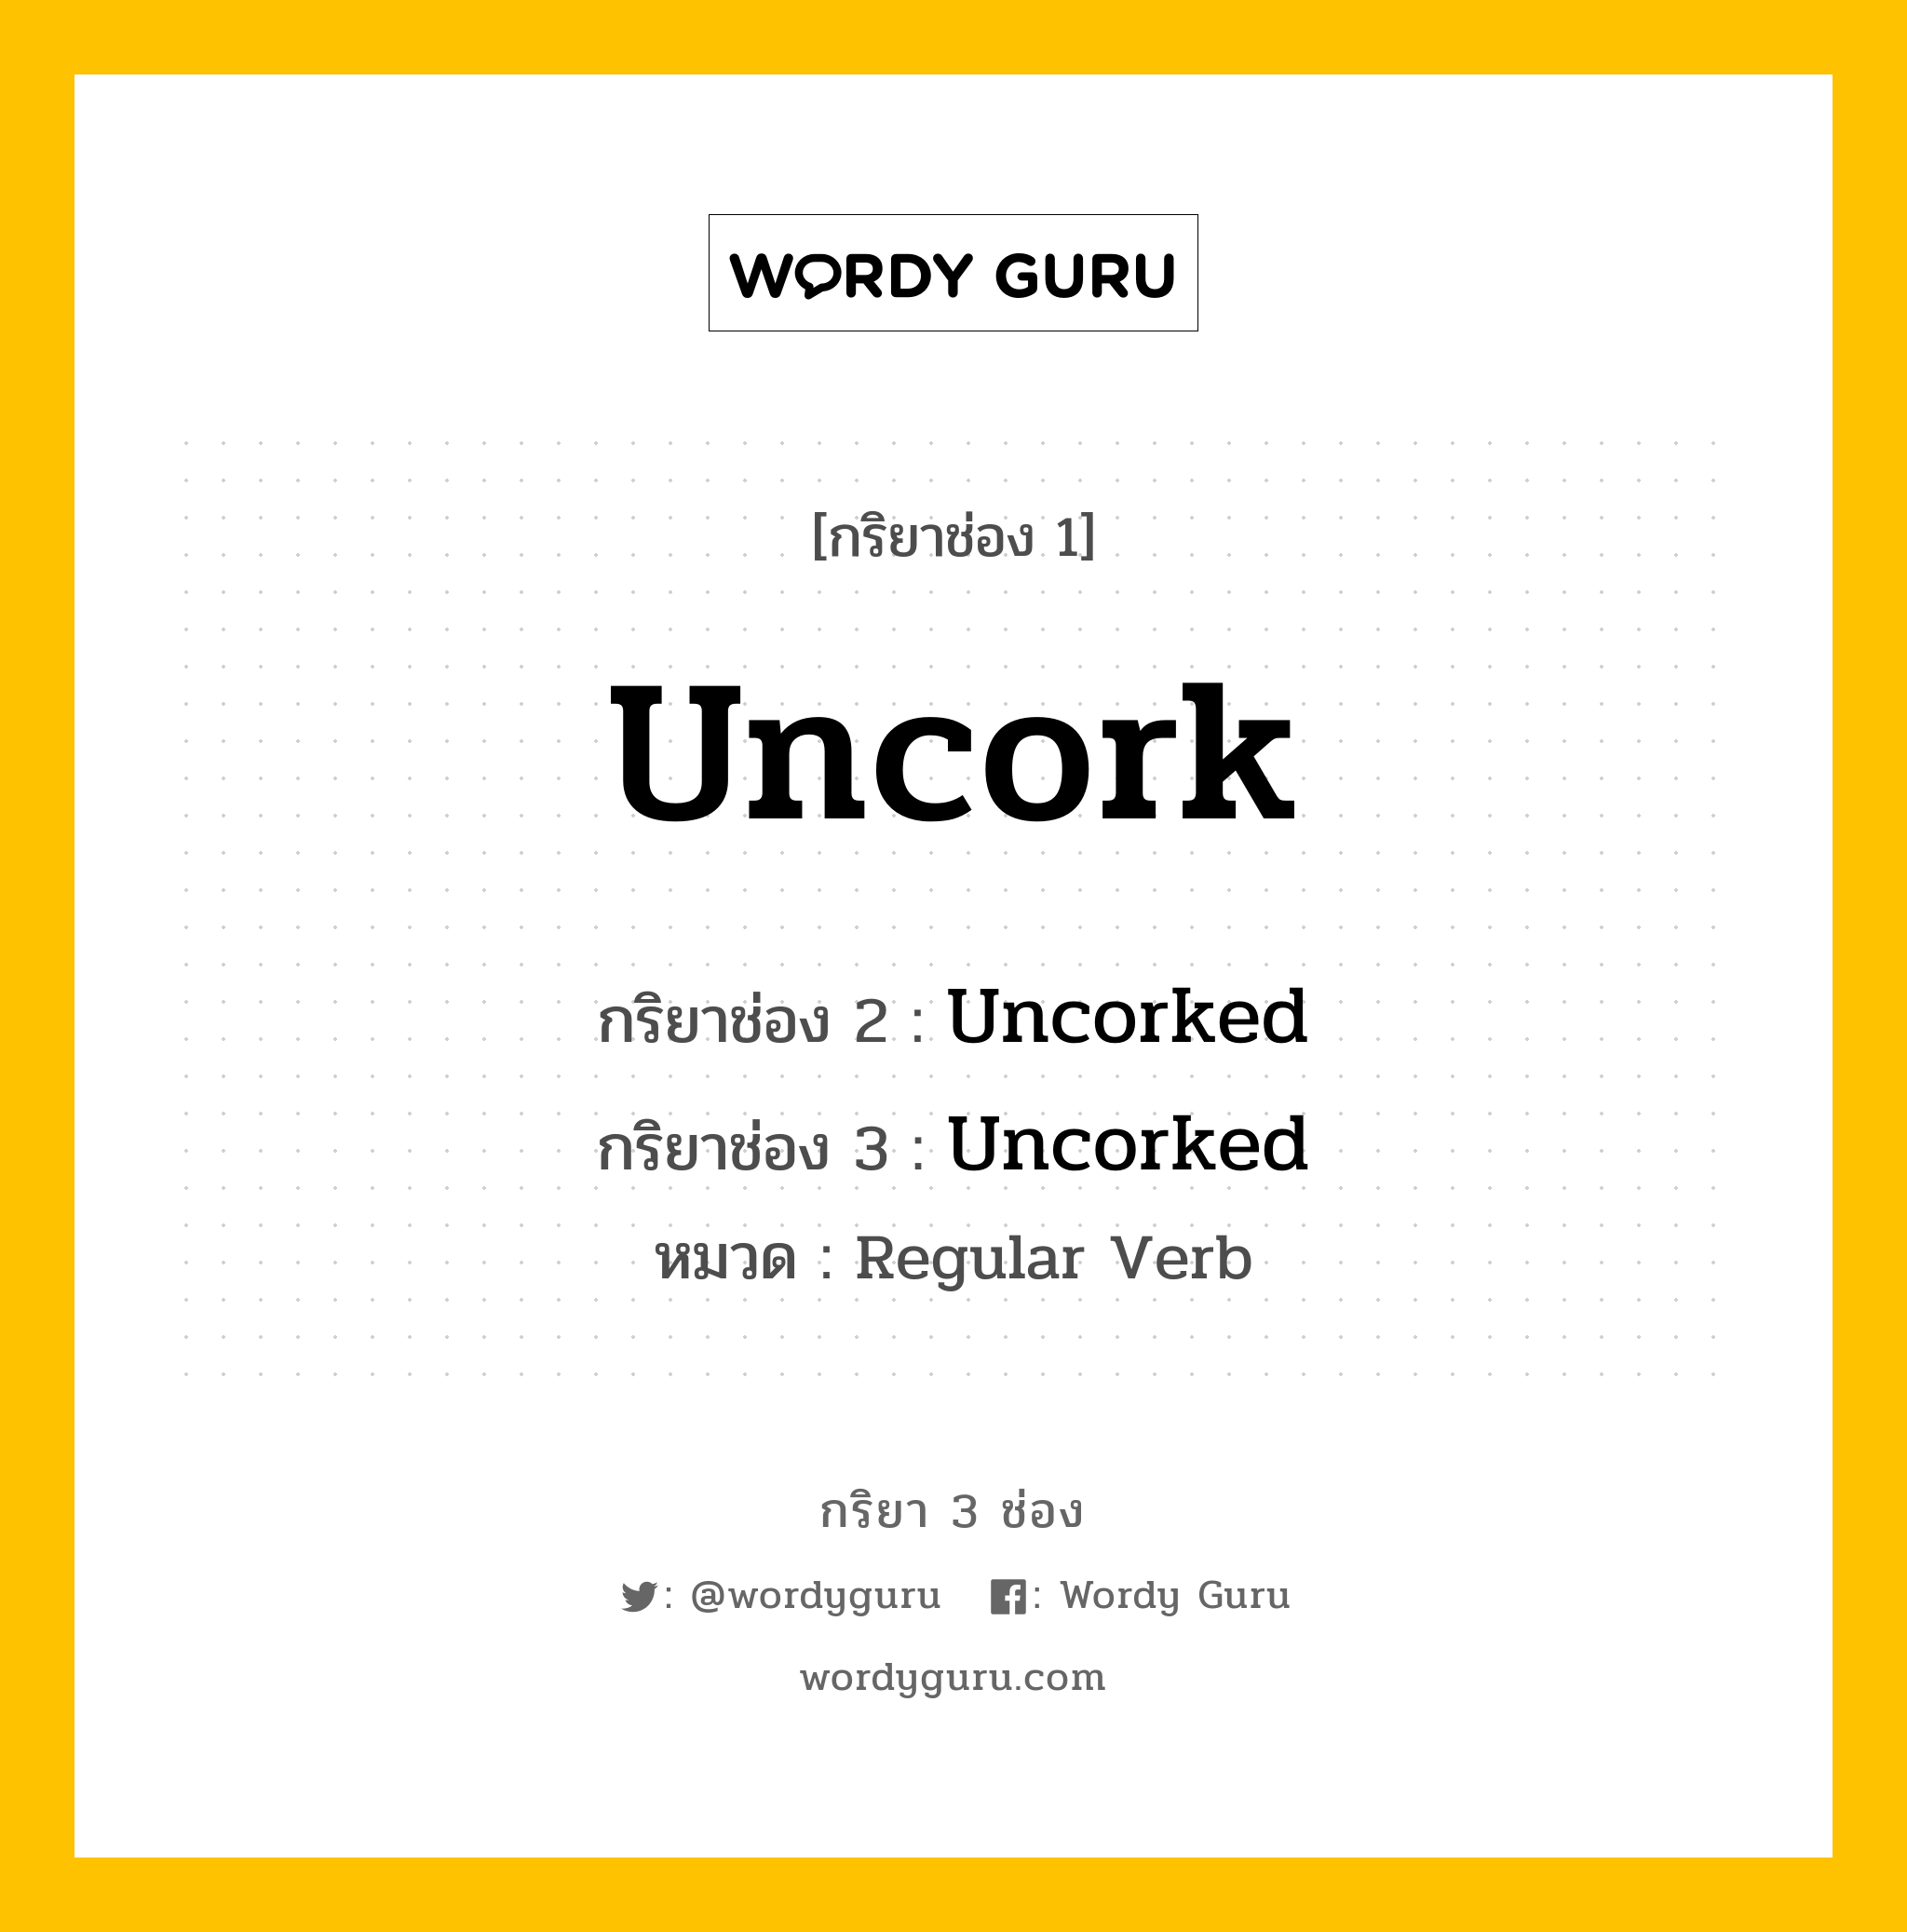 กริยา 3 ช่อง: Uncork ช่อง 2 Uncork ช่อง 3 คืออะไร, กริยาช่อง 1 Uncork กริยาช่อง 2 Uncorked กริยาช่อง 3 Uncorked หมวด Regular Verb หมวด Regular Verb